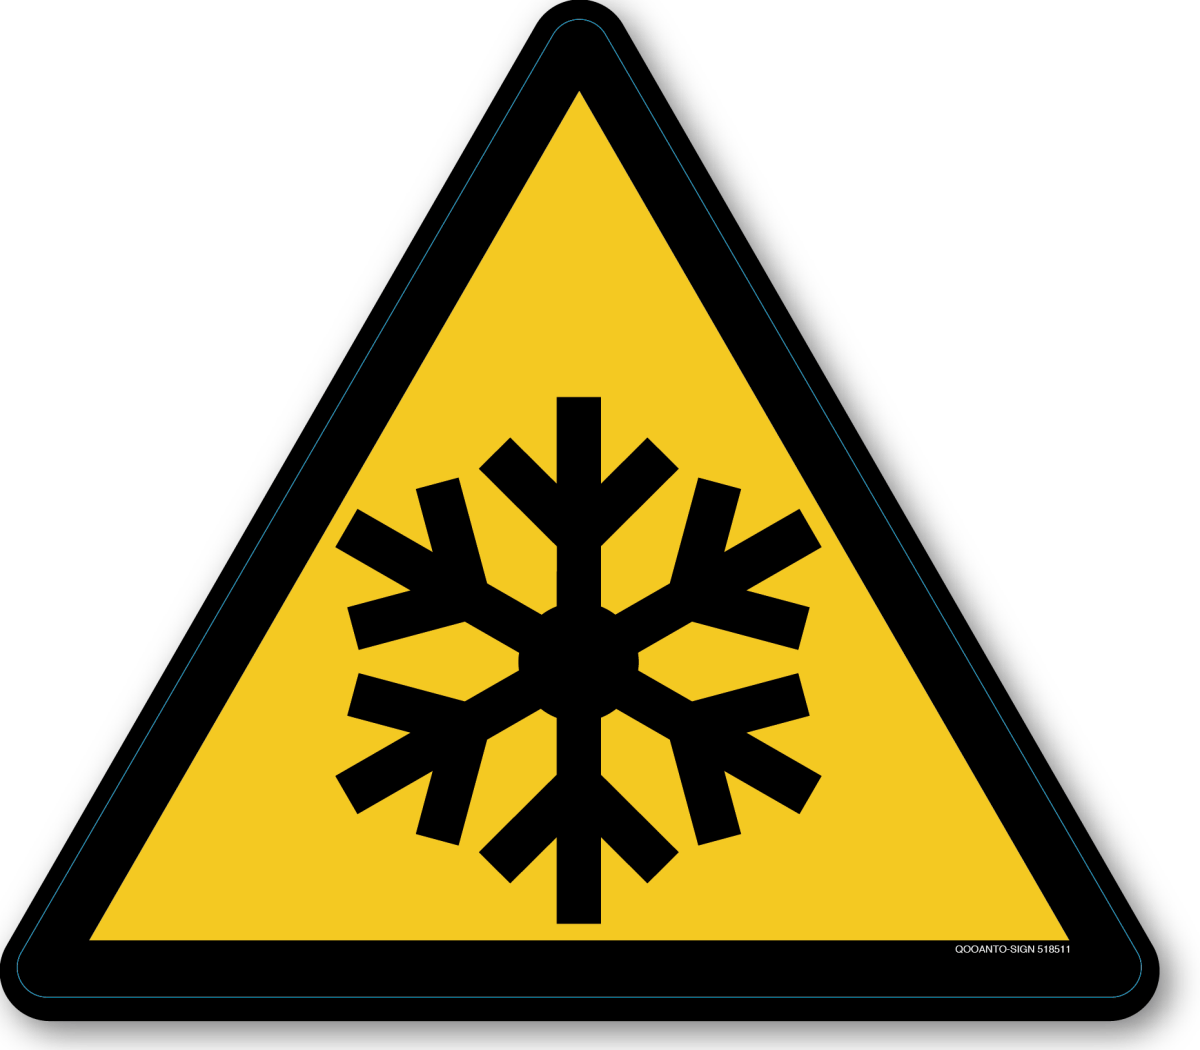 Warnung Vor Niedriger Temperatur Kälte, EN ISO 7010, W010 Warnschild oder Aufkleber aus Alu-Verbund oder Selbstklebefolie mit UV-Schutz - QOOANTO-SIGN